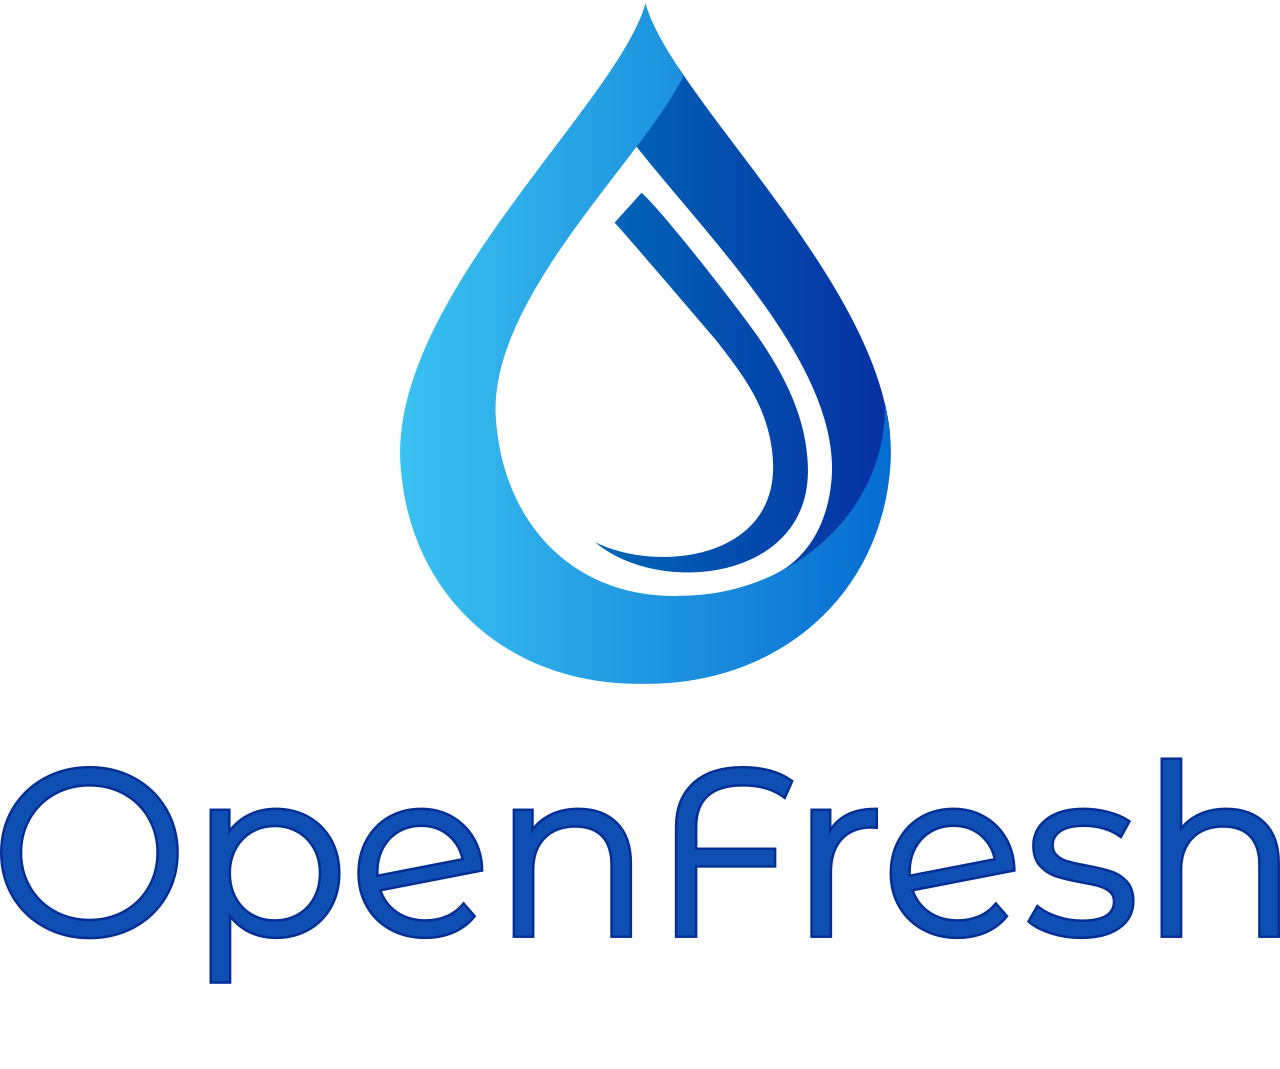 OpenFresh's logo